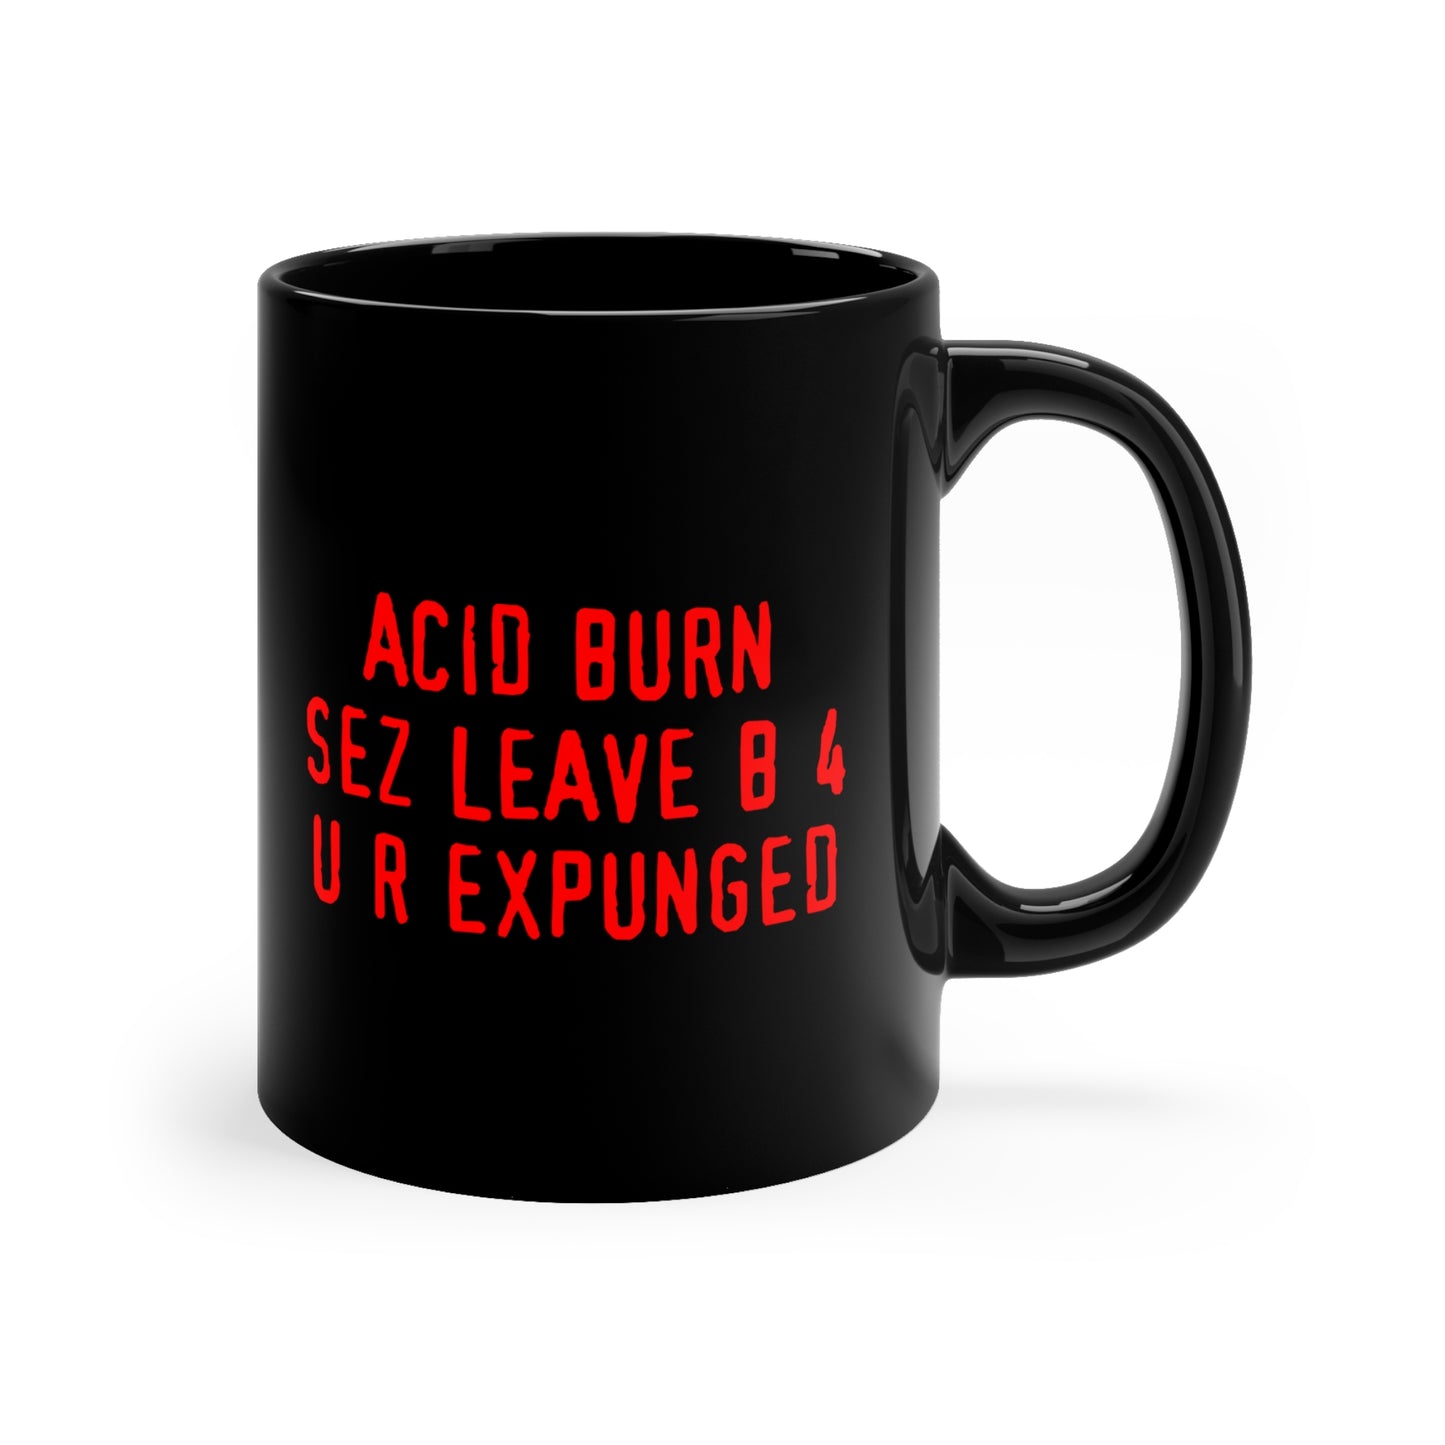 aCiD bUrN ceramic mug